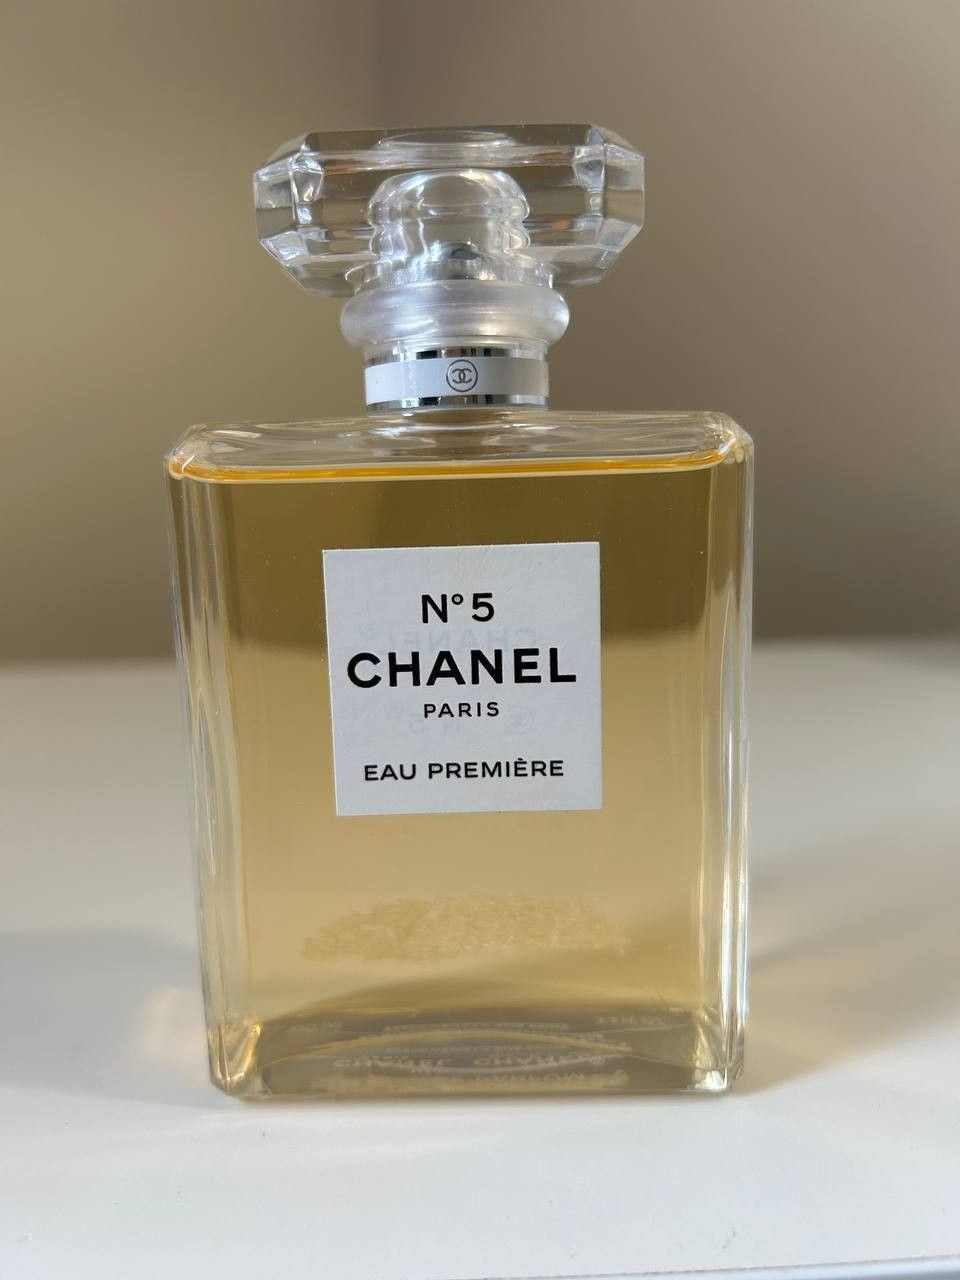 Chanel 5 eau premiere eau de parfum 100ml Tester hajuvesi